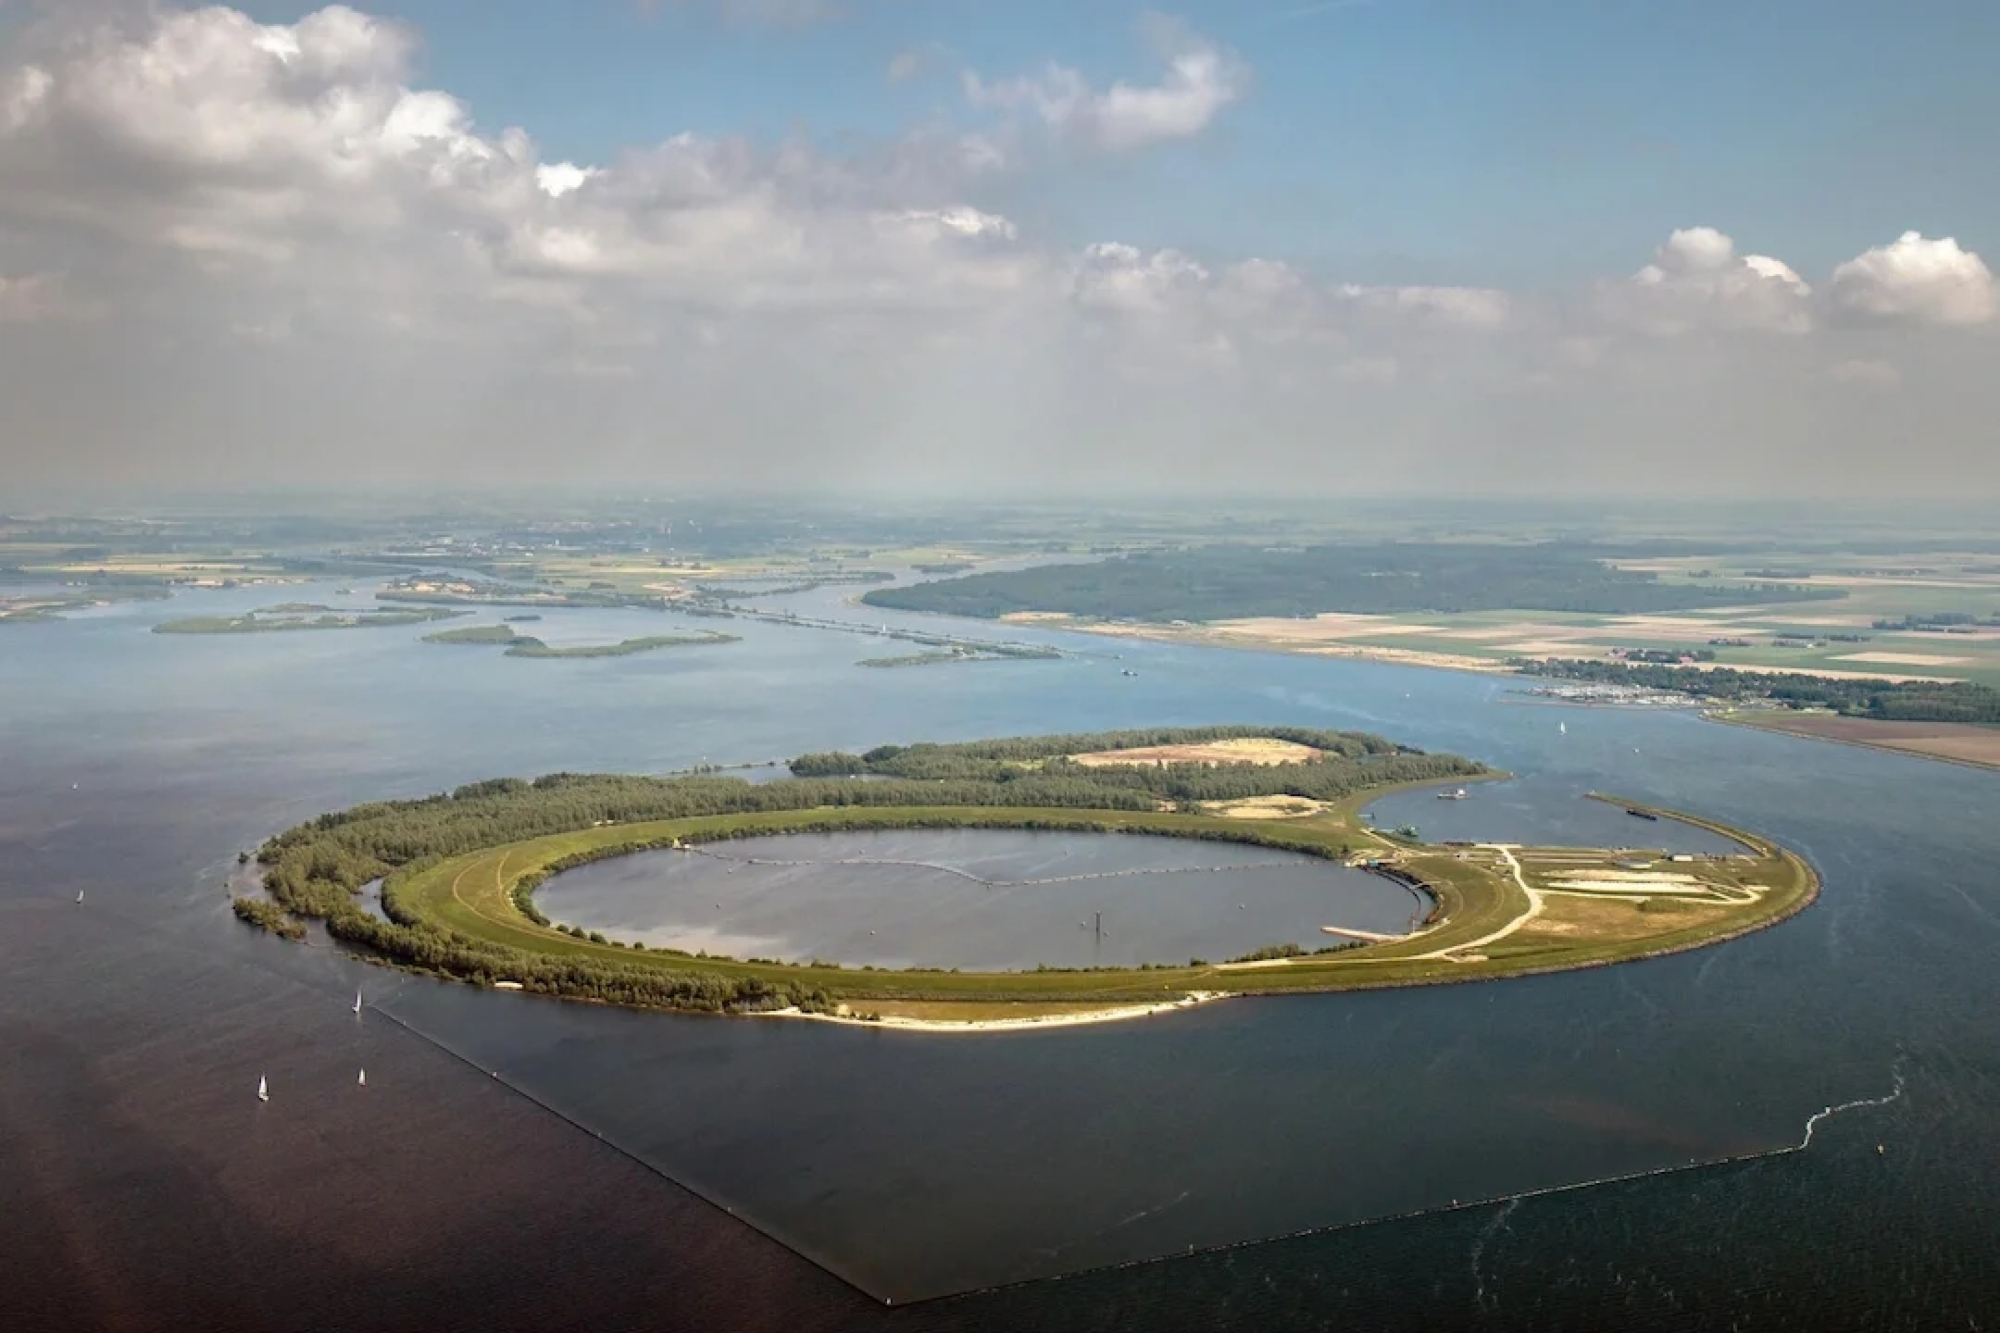 Drijvend zonnepark op eiland IJsseloog nu niet mogelijk